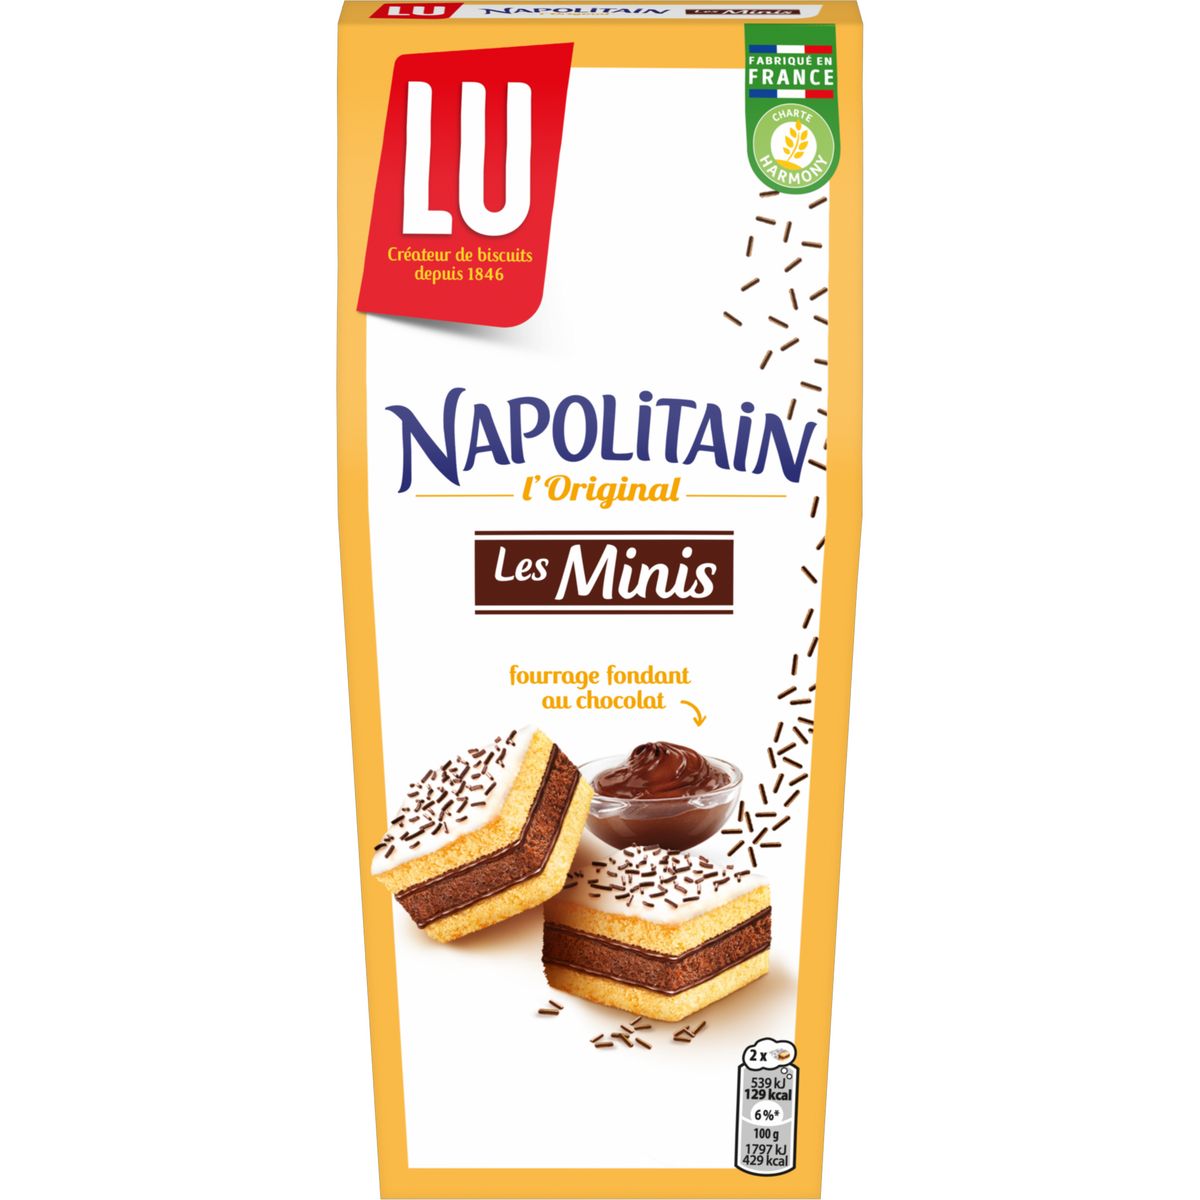 LU Napolitain Gâteau 400g (lot de 3) 